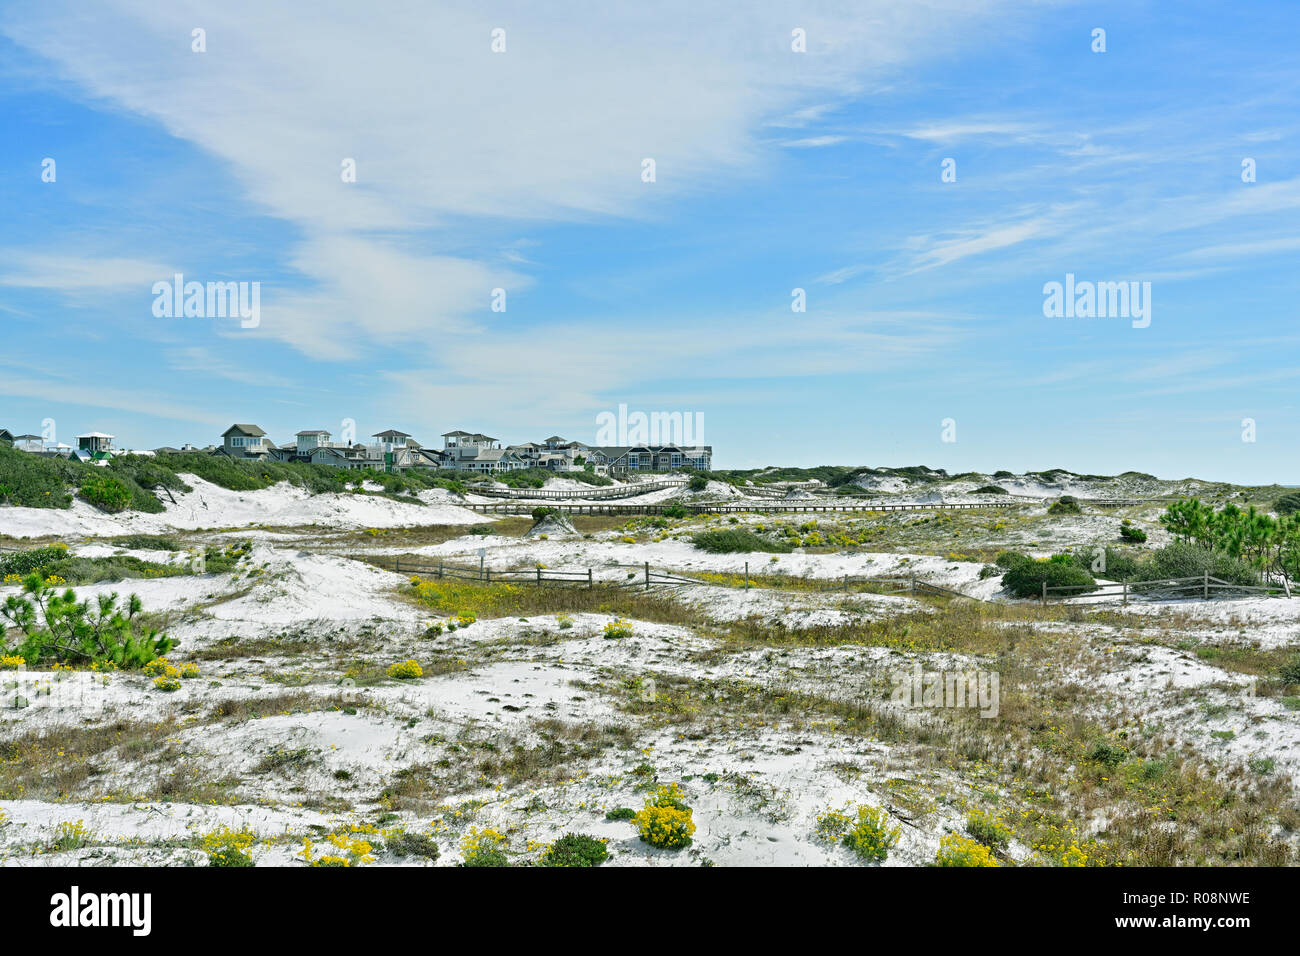 Florida di sabbia costiera paesaggio di dune guardando verso Watersound costiere una comunità vivente nel panhandle o sulla costa del Golfo della Florida, Stati Uniti d'America. Foto Stock